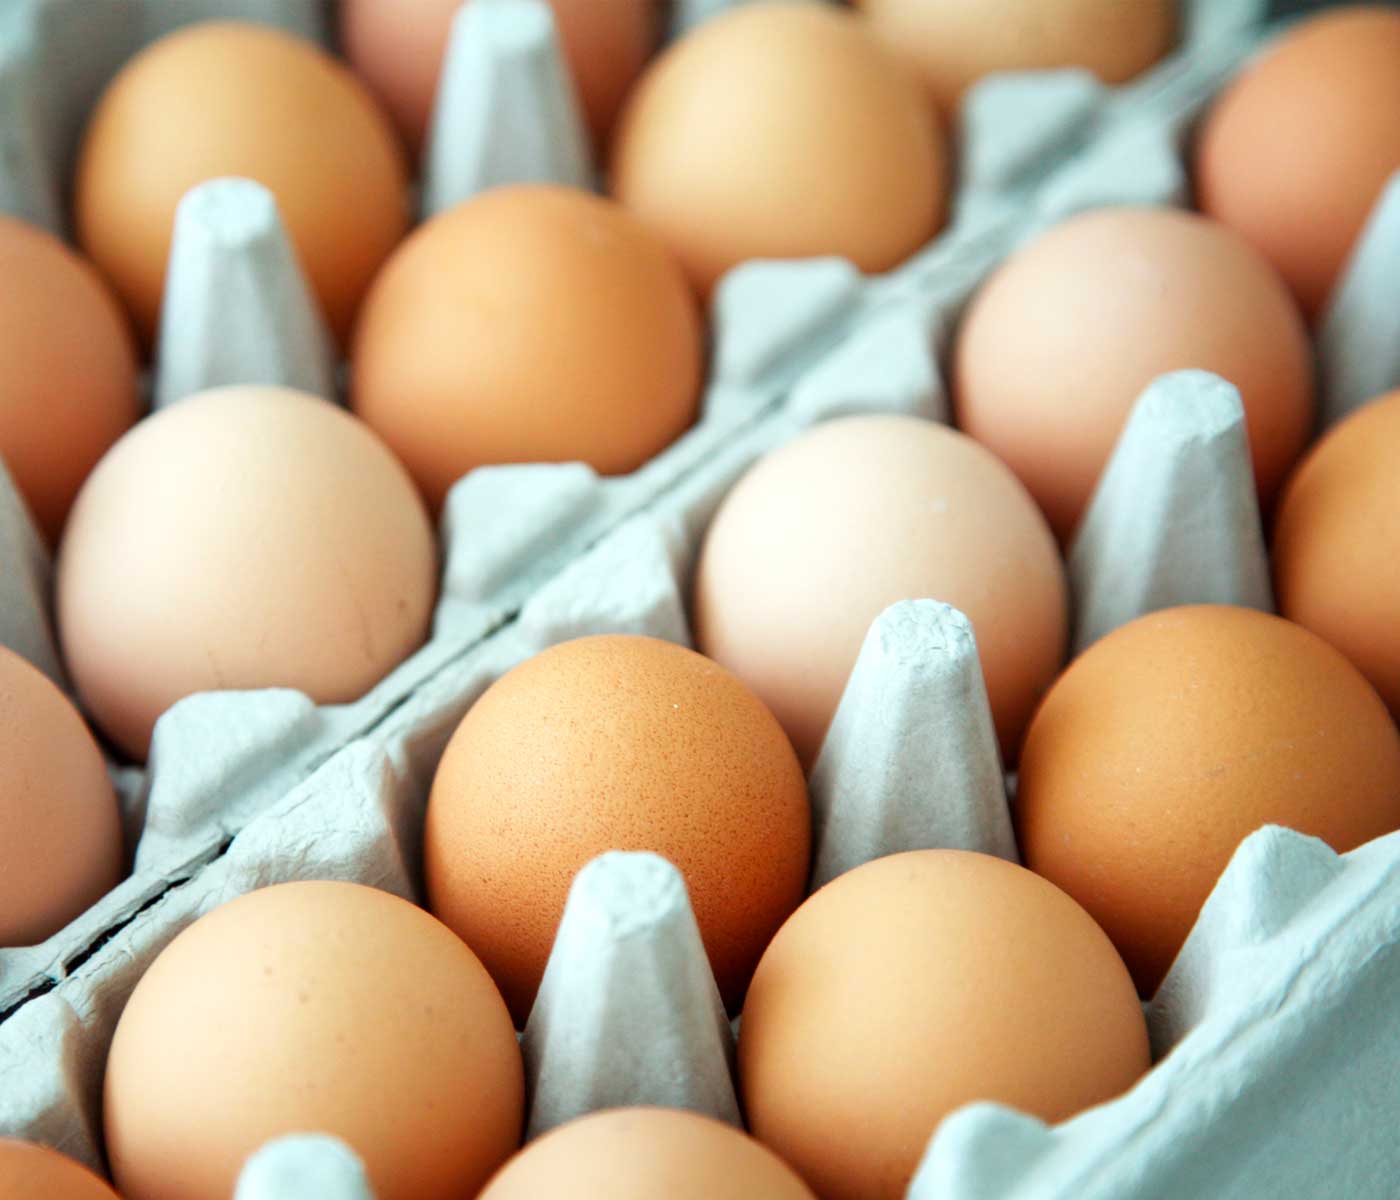 Importan huevos desde Brasil y hay un fuerte enojo entre los productores